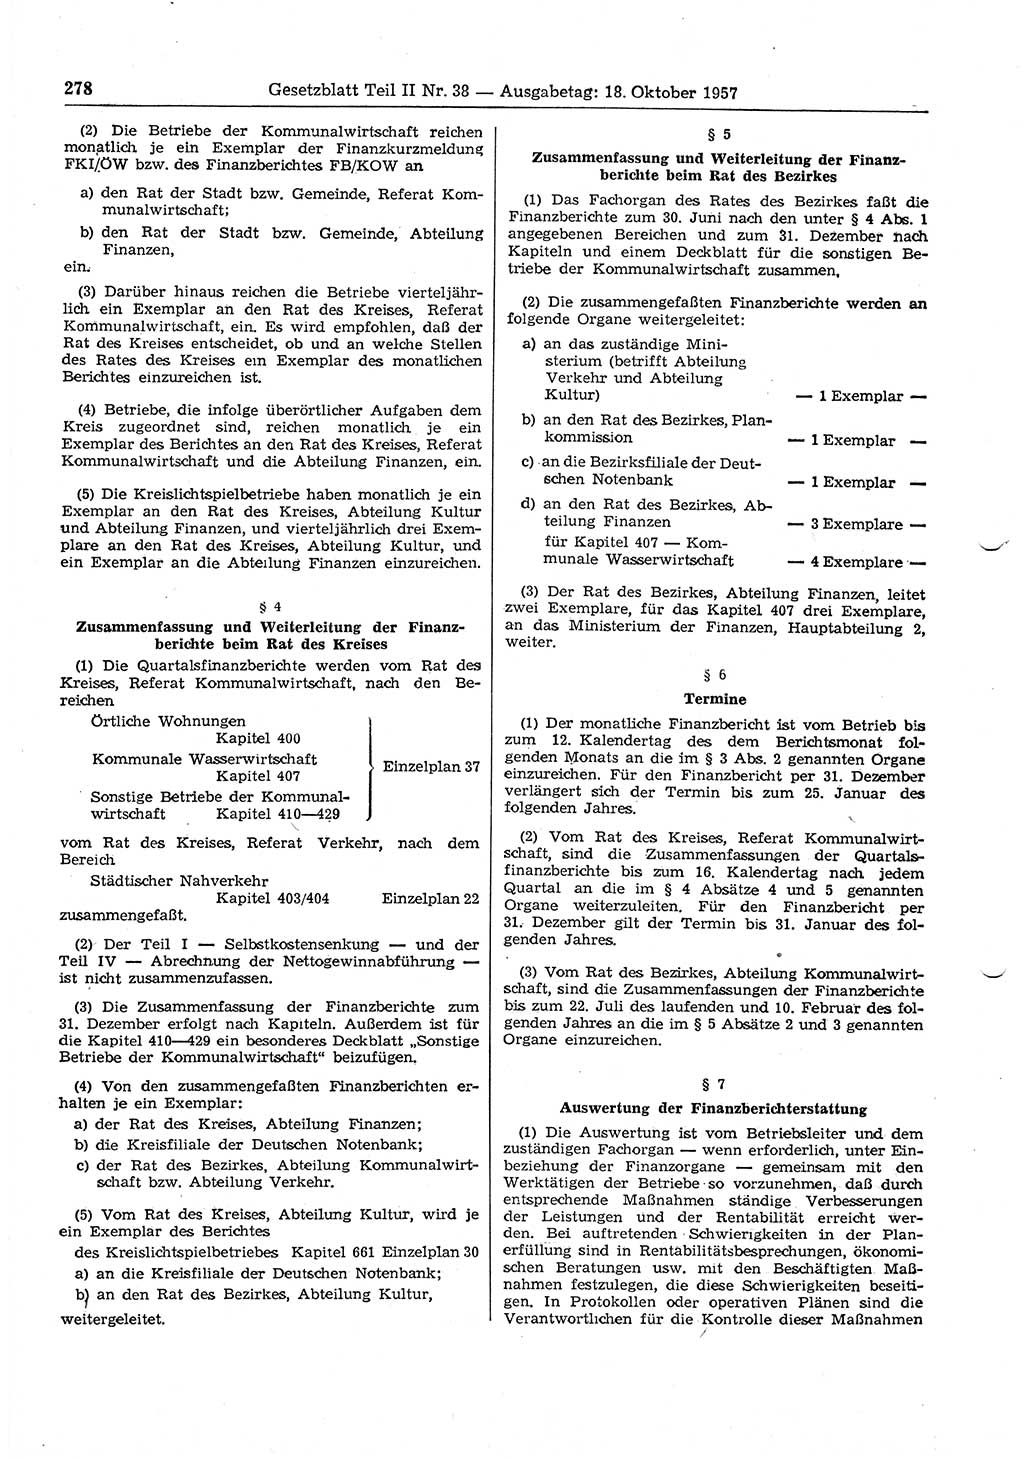 Gesetzblatt (GBl.) der Deutschen Demokratischen Republik (DDR) Teil ⅠⅠ 1957, Seite 278 (GBl. DDR ⅠⅠ 1957, S. 278)